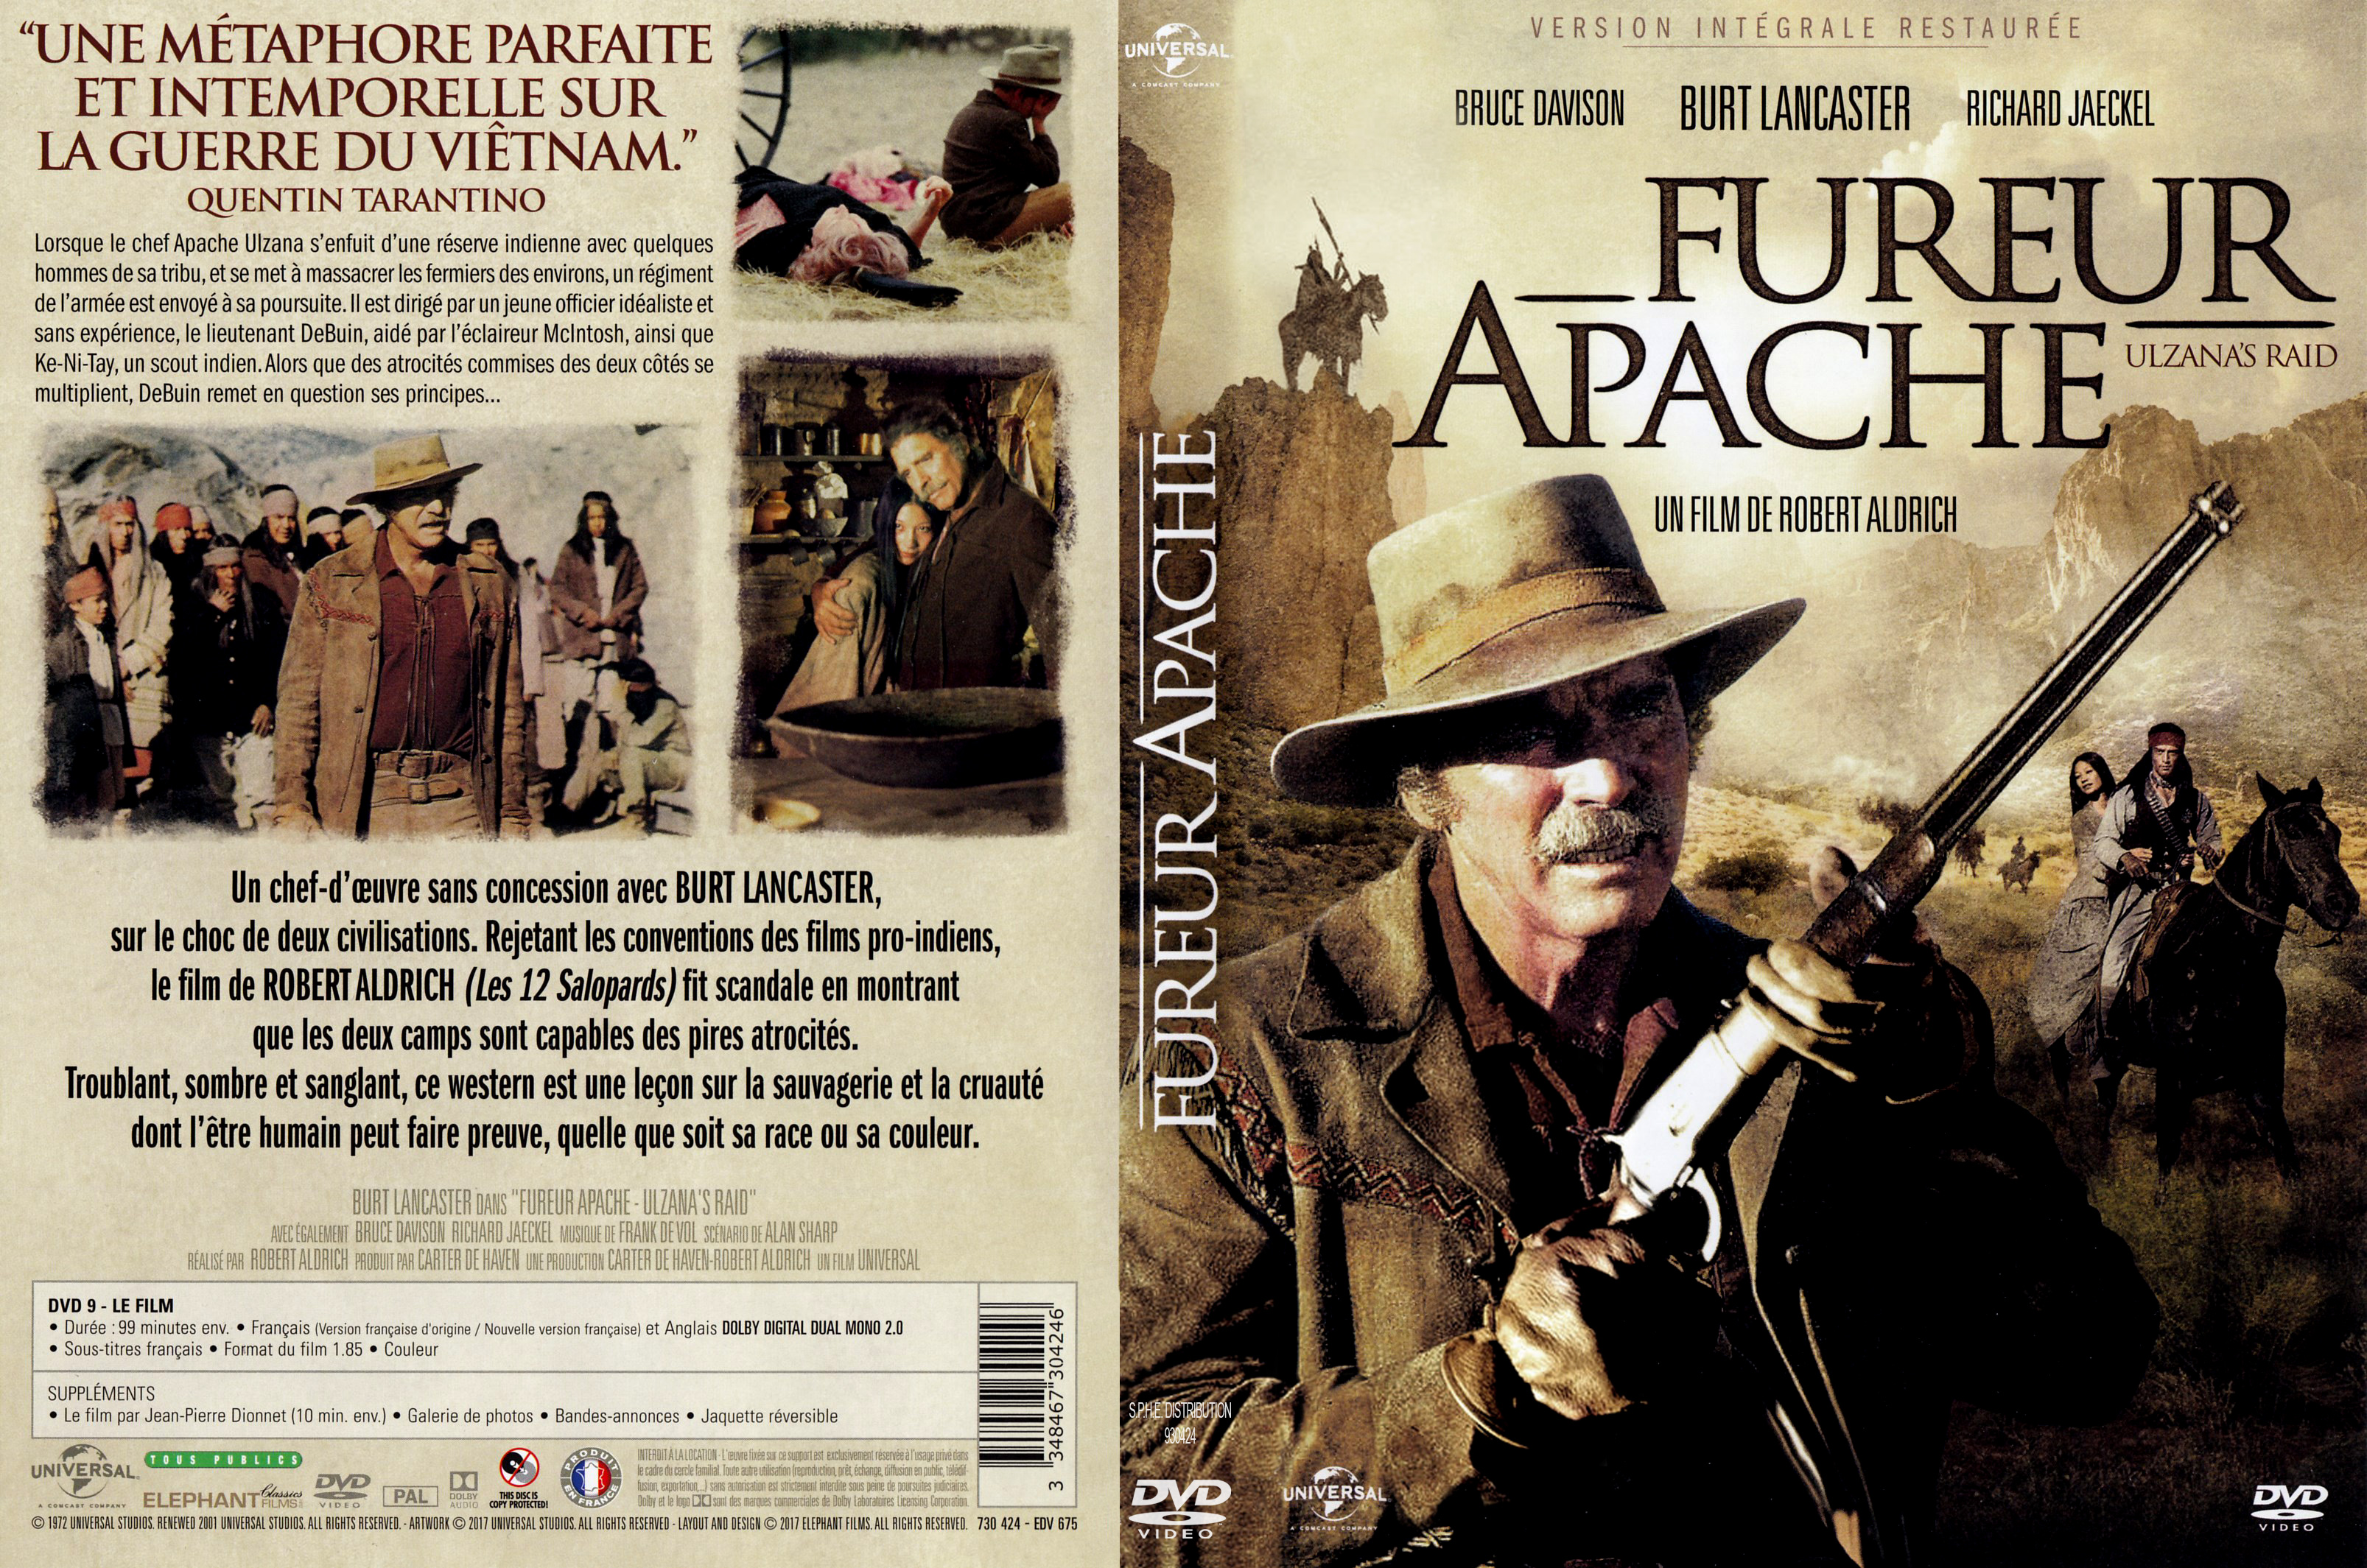 Jaquette DVD Fureur apache v3